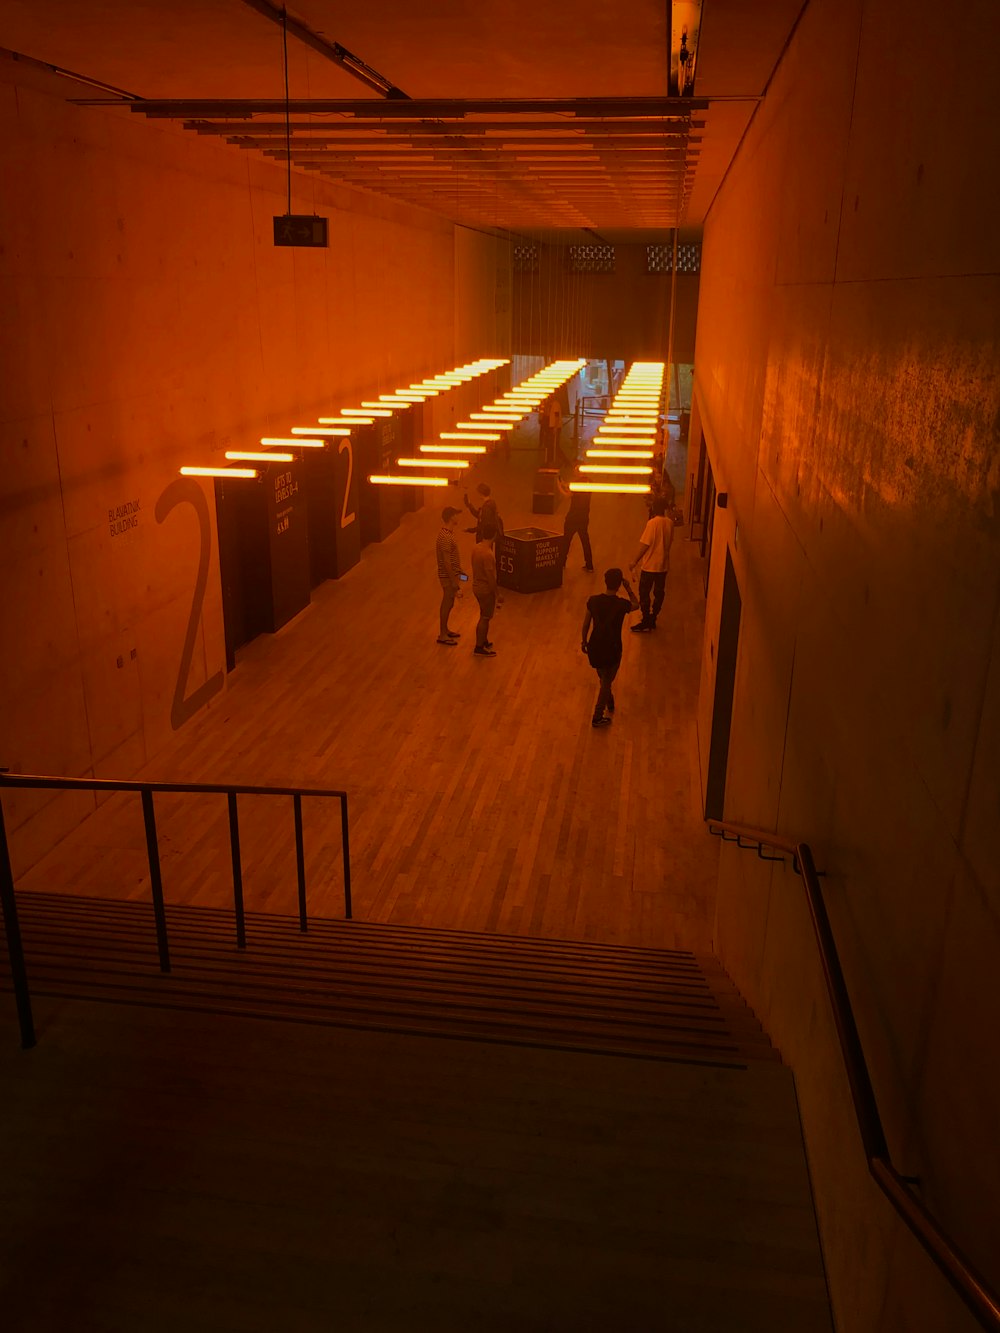 people walking on hallway during daytime